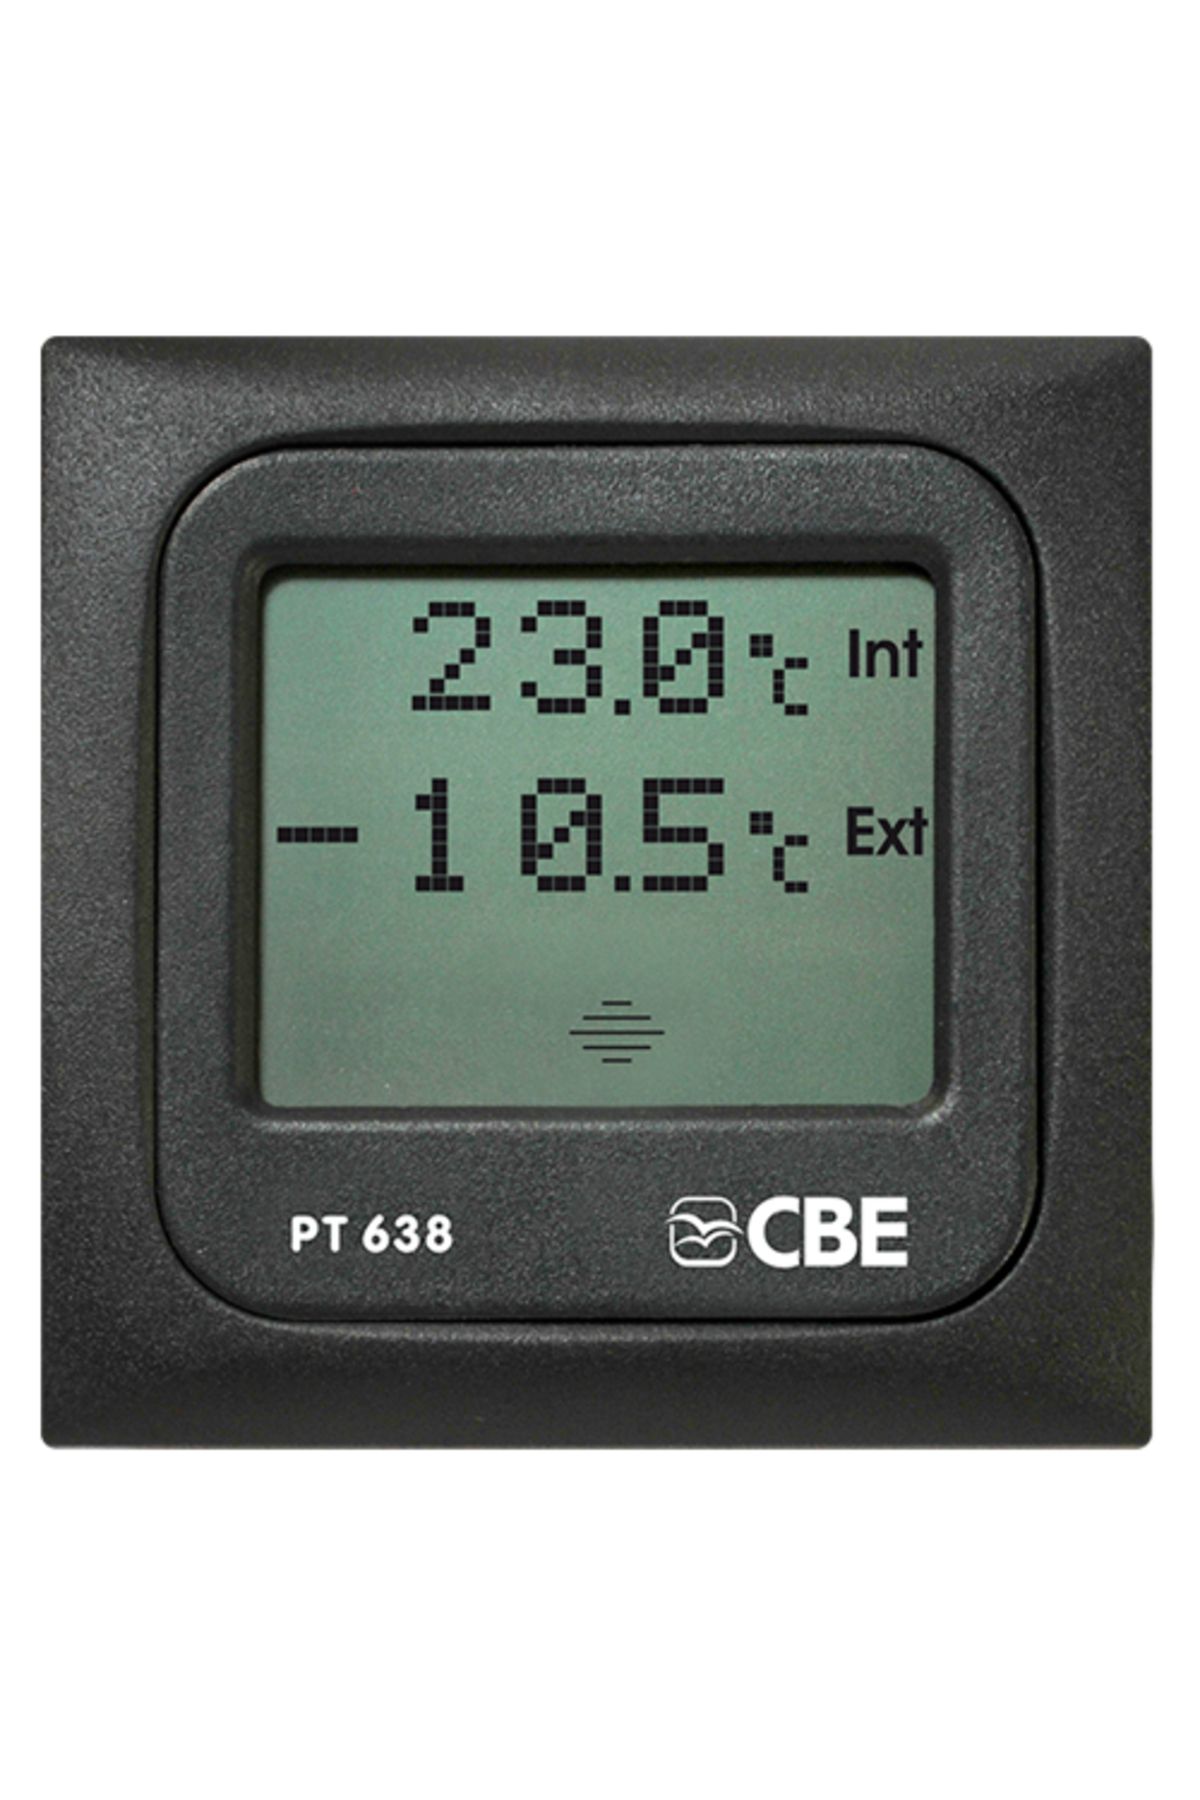 CBE Pt638 Dokunmatik Karavan Iç Dış Sıcaklık Test Paneli